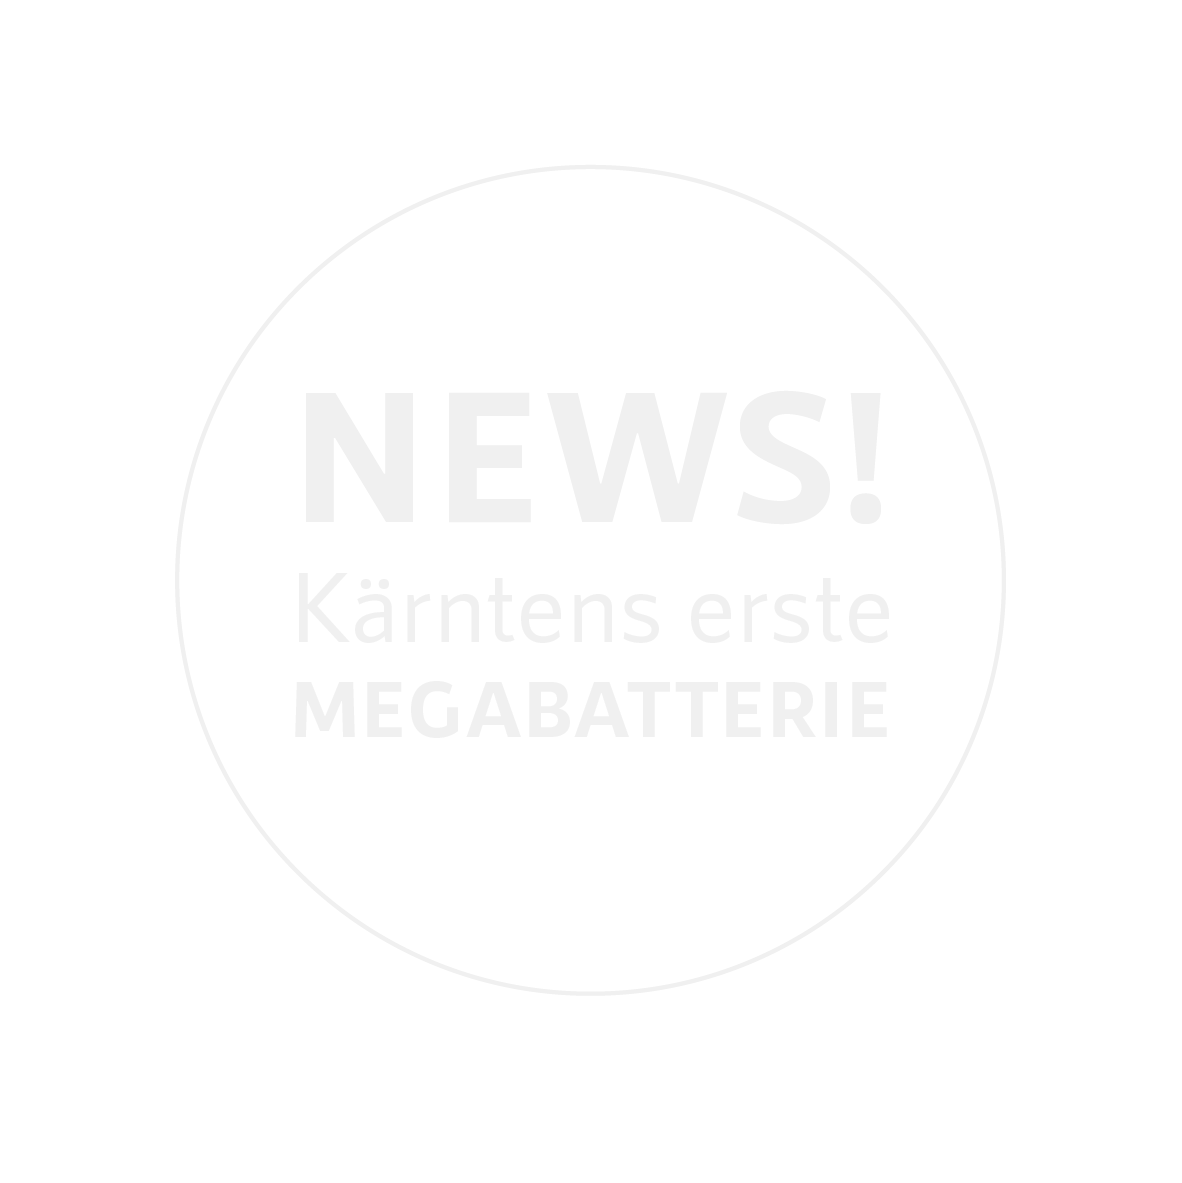 NEWS: Die erste Megabatterie in Kärnten!